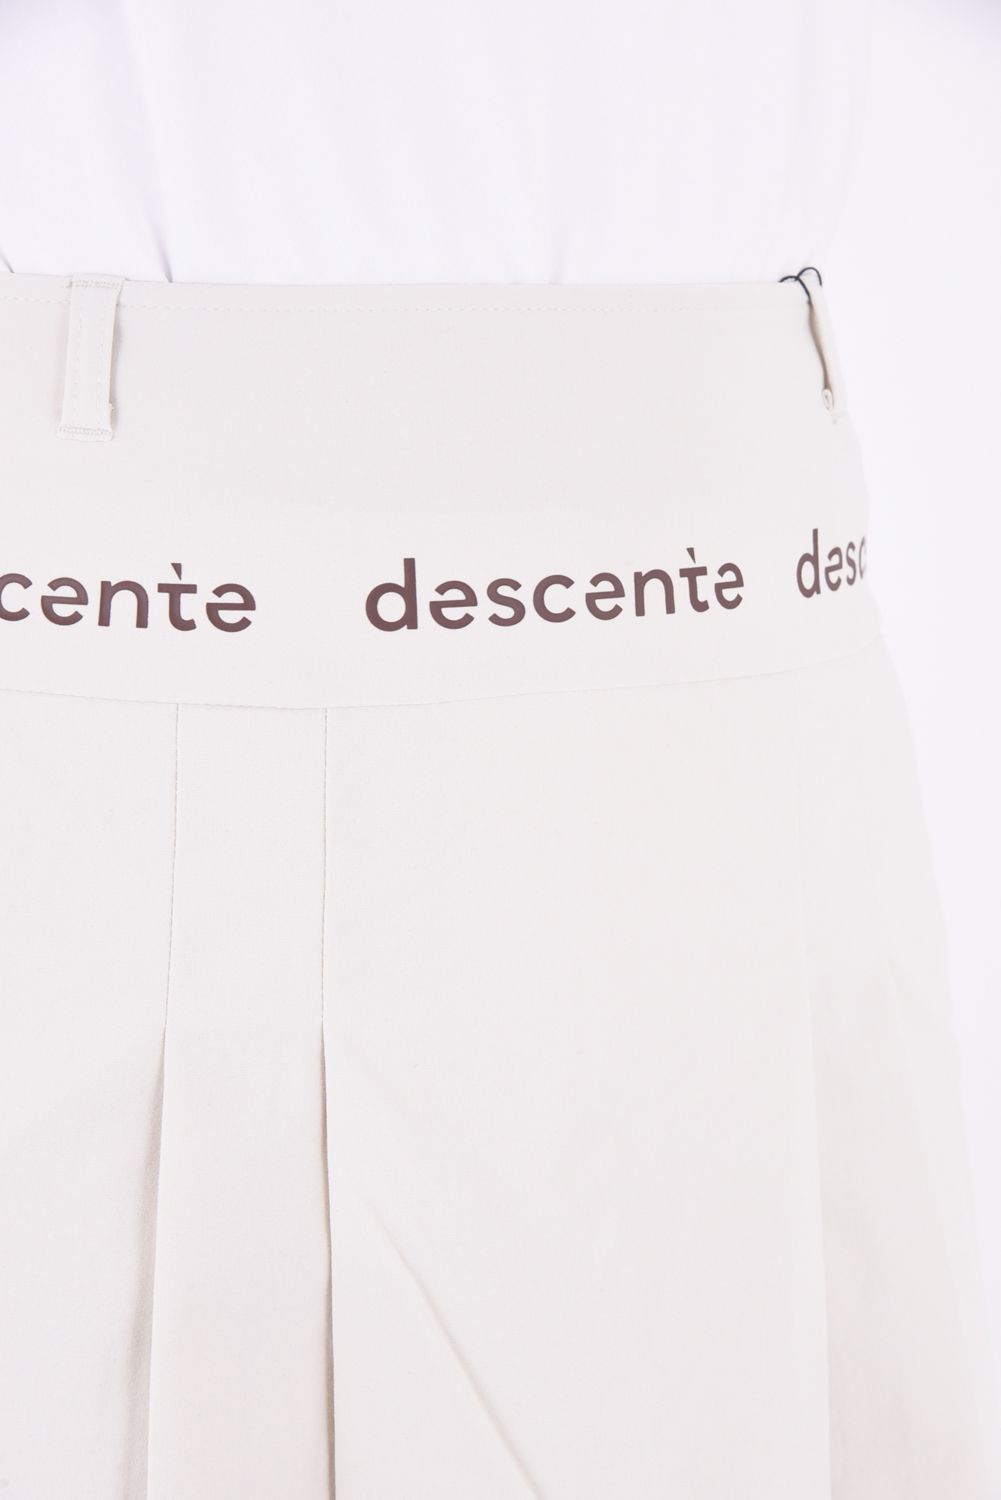 DESCENTE GOLF - 【レディース】 プリーツスカート インナーパンツ付き